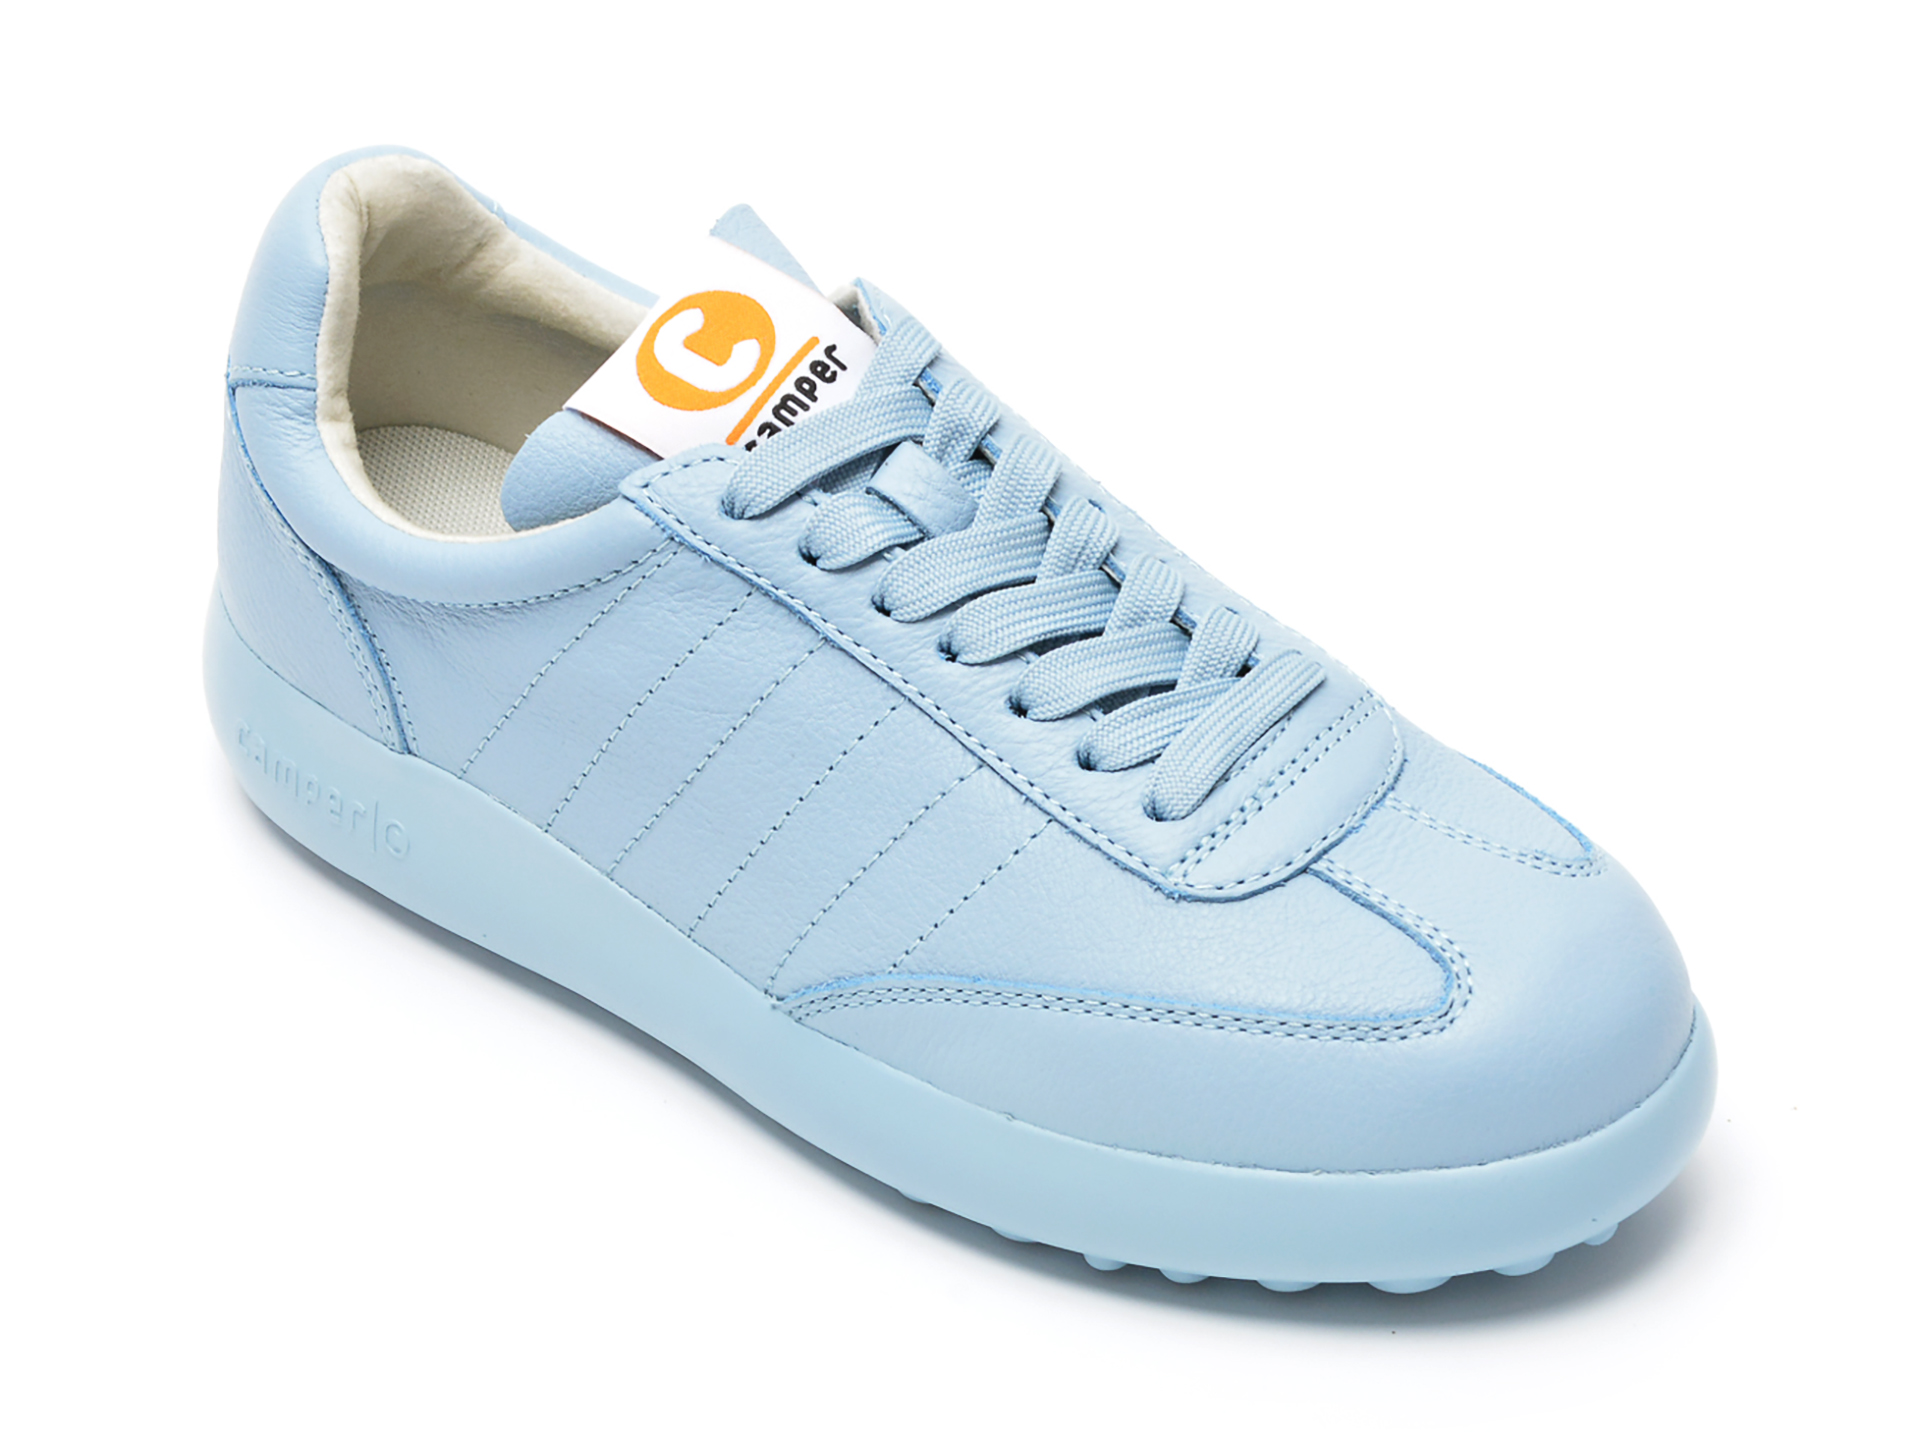 Pantofi sport CAMPER albastri, K201392, din piele naturala Camper